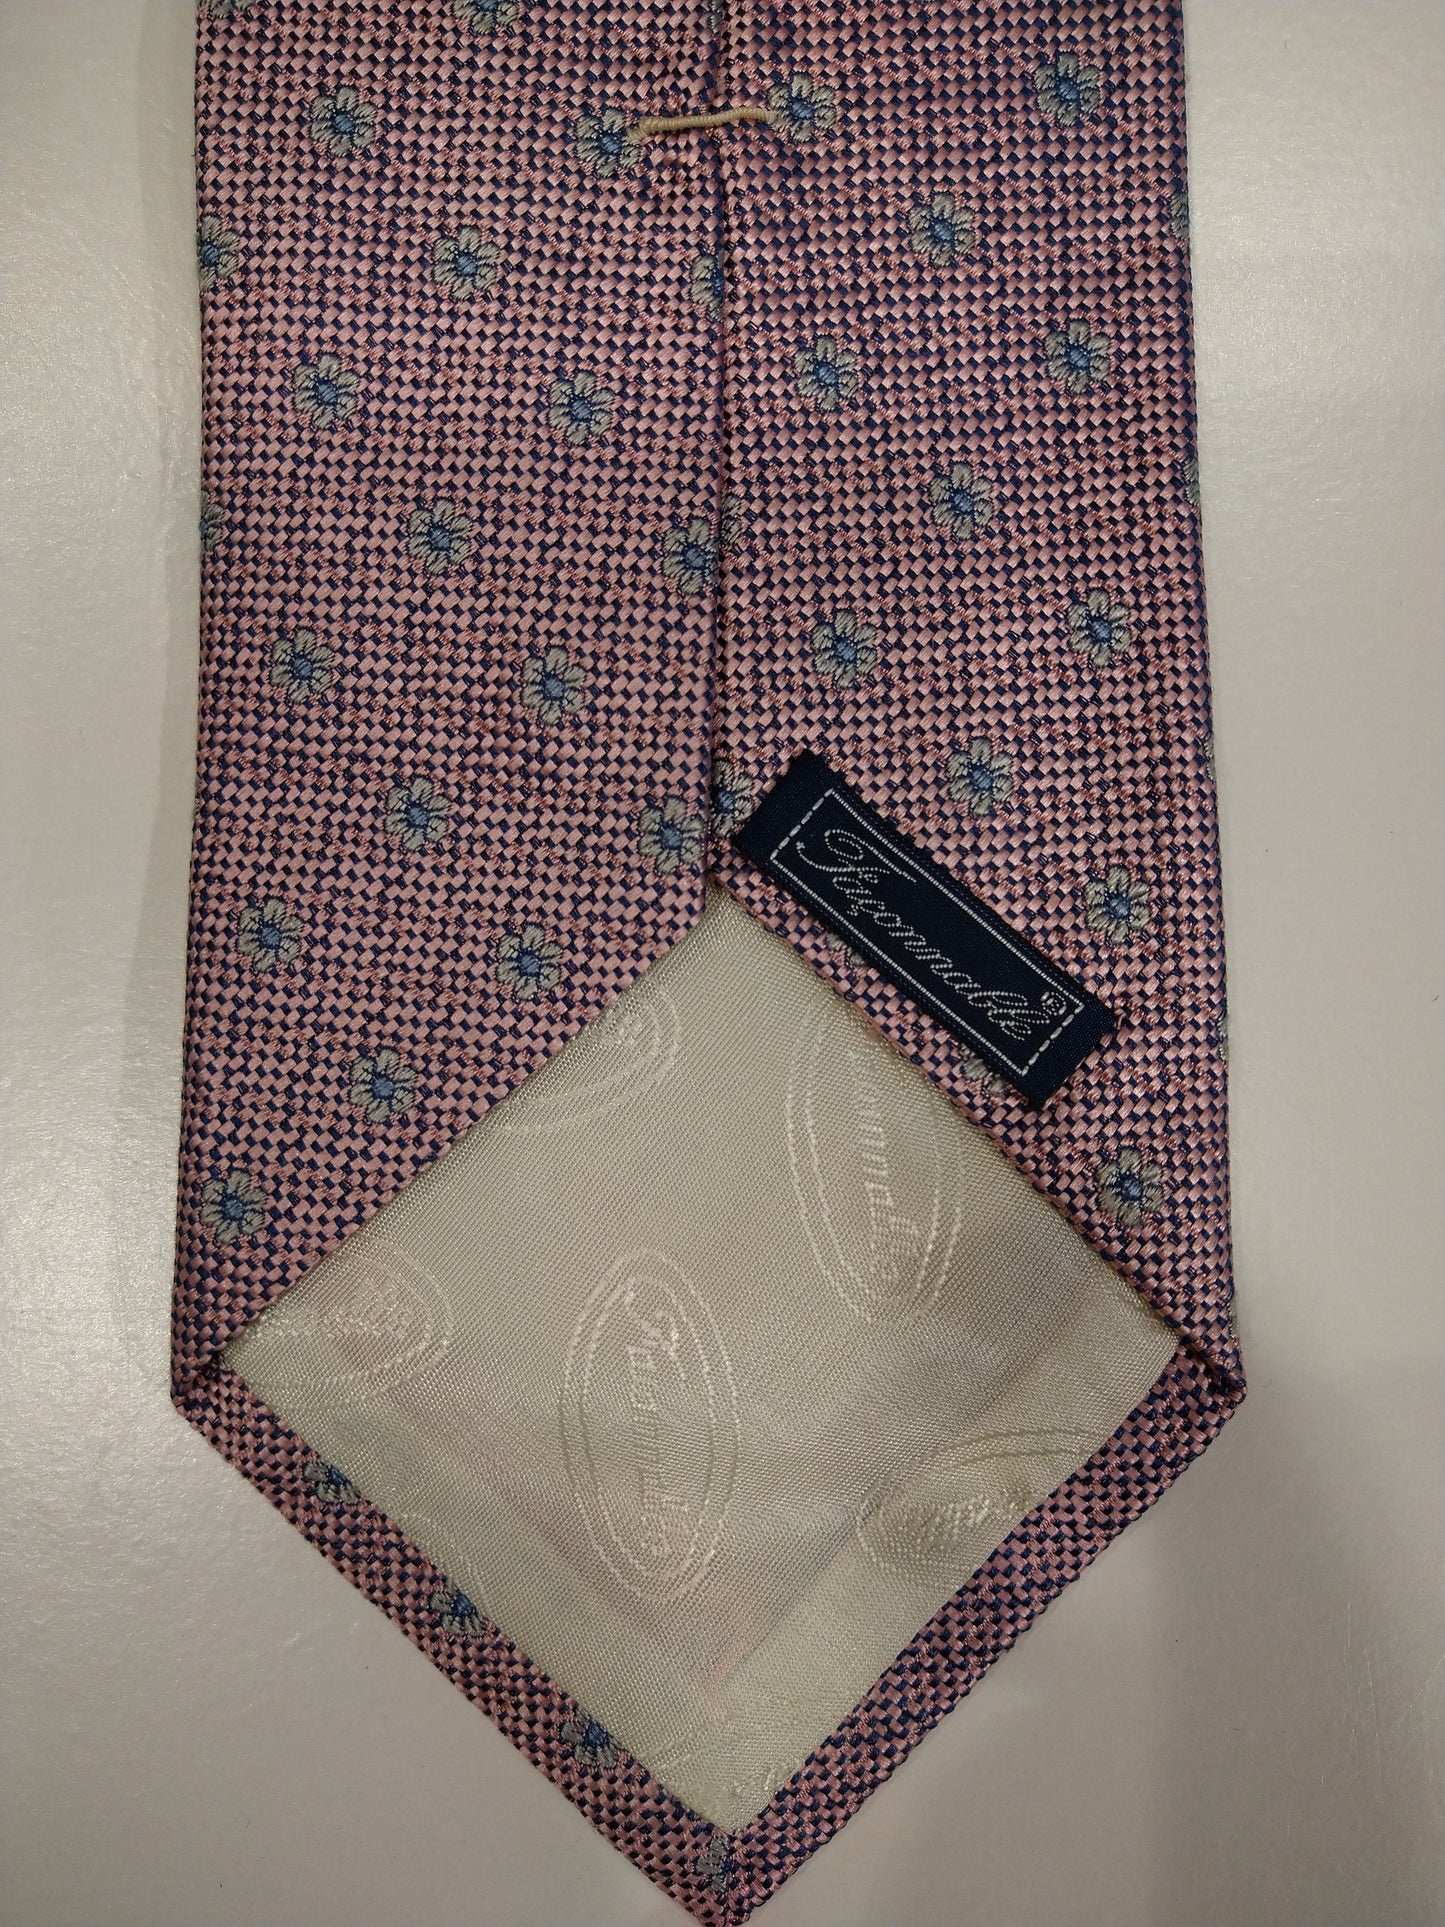 Faconnable stropdas. Roze glanzend motief